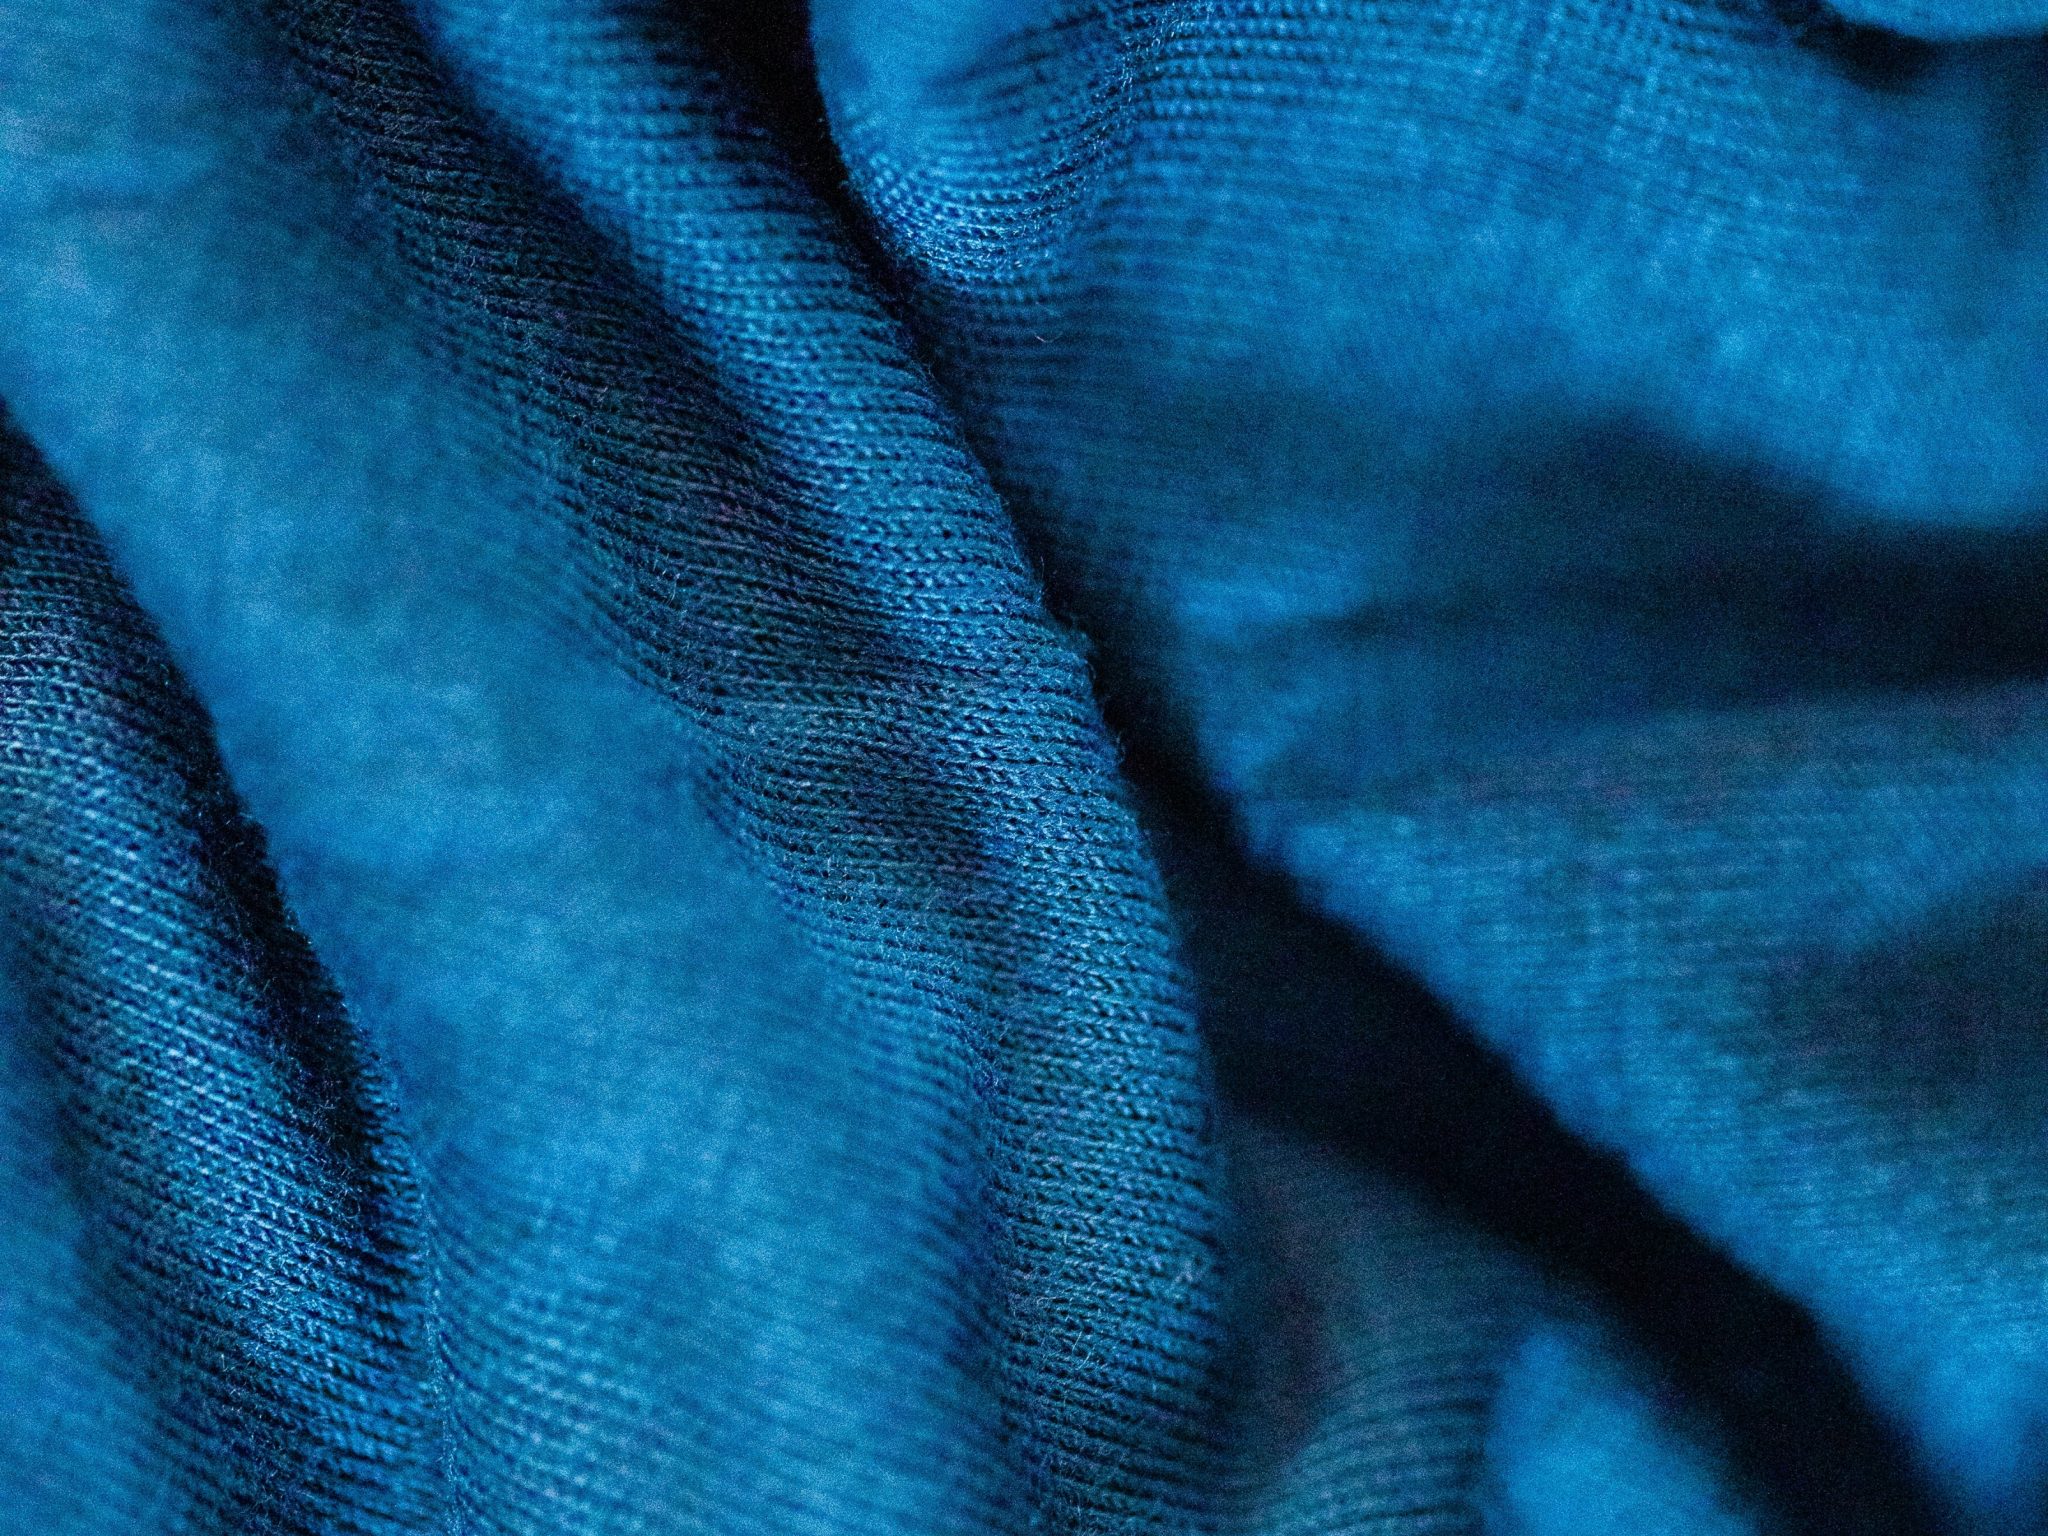 2048x1536 wallpaper Blue Velvet Fabric Cloth iPad Wallpaper 2048x1536 pixels resolution